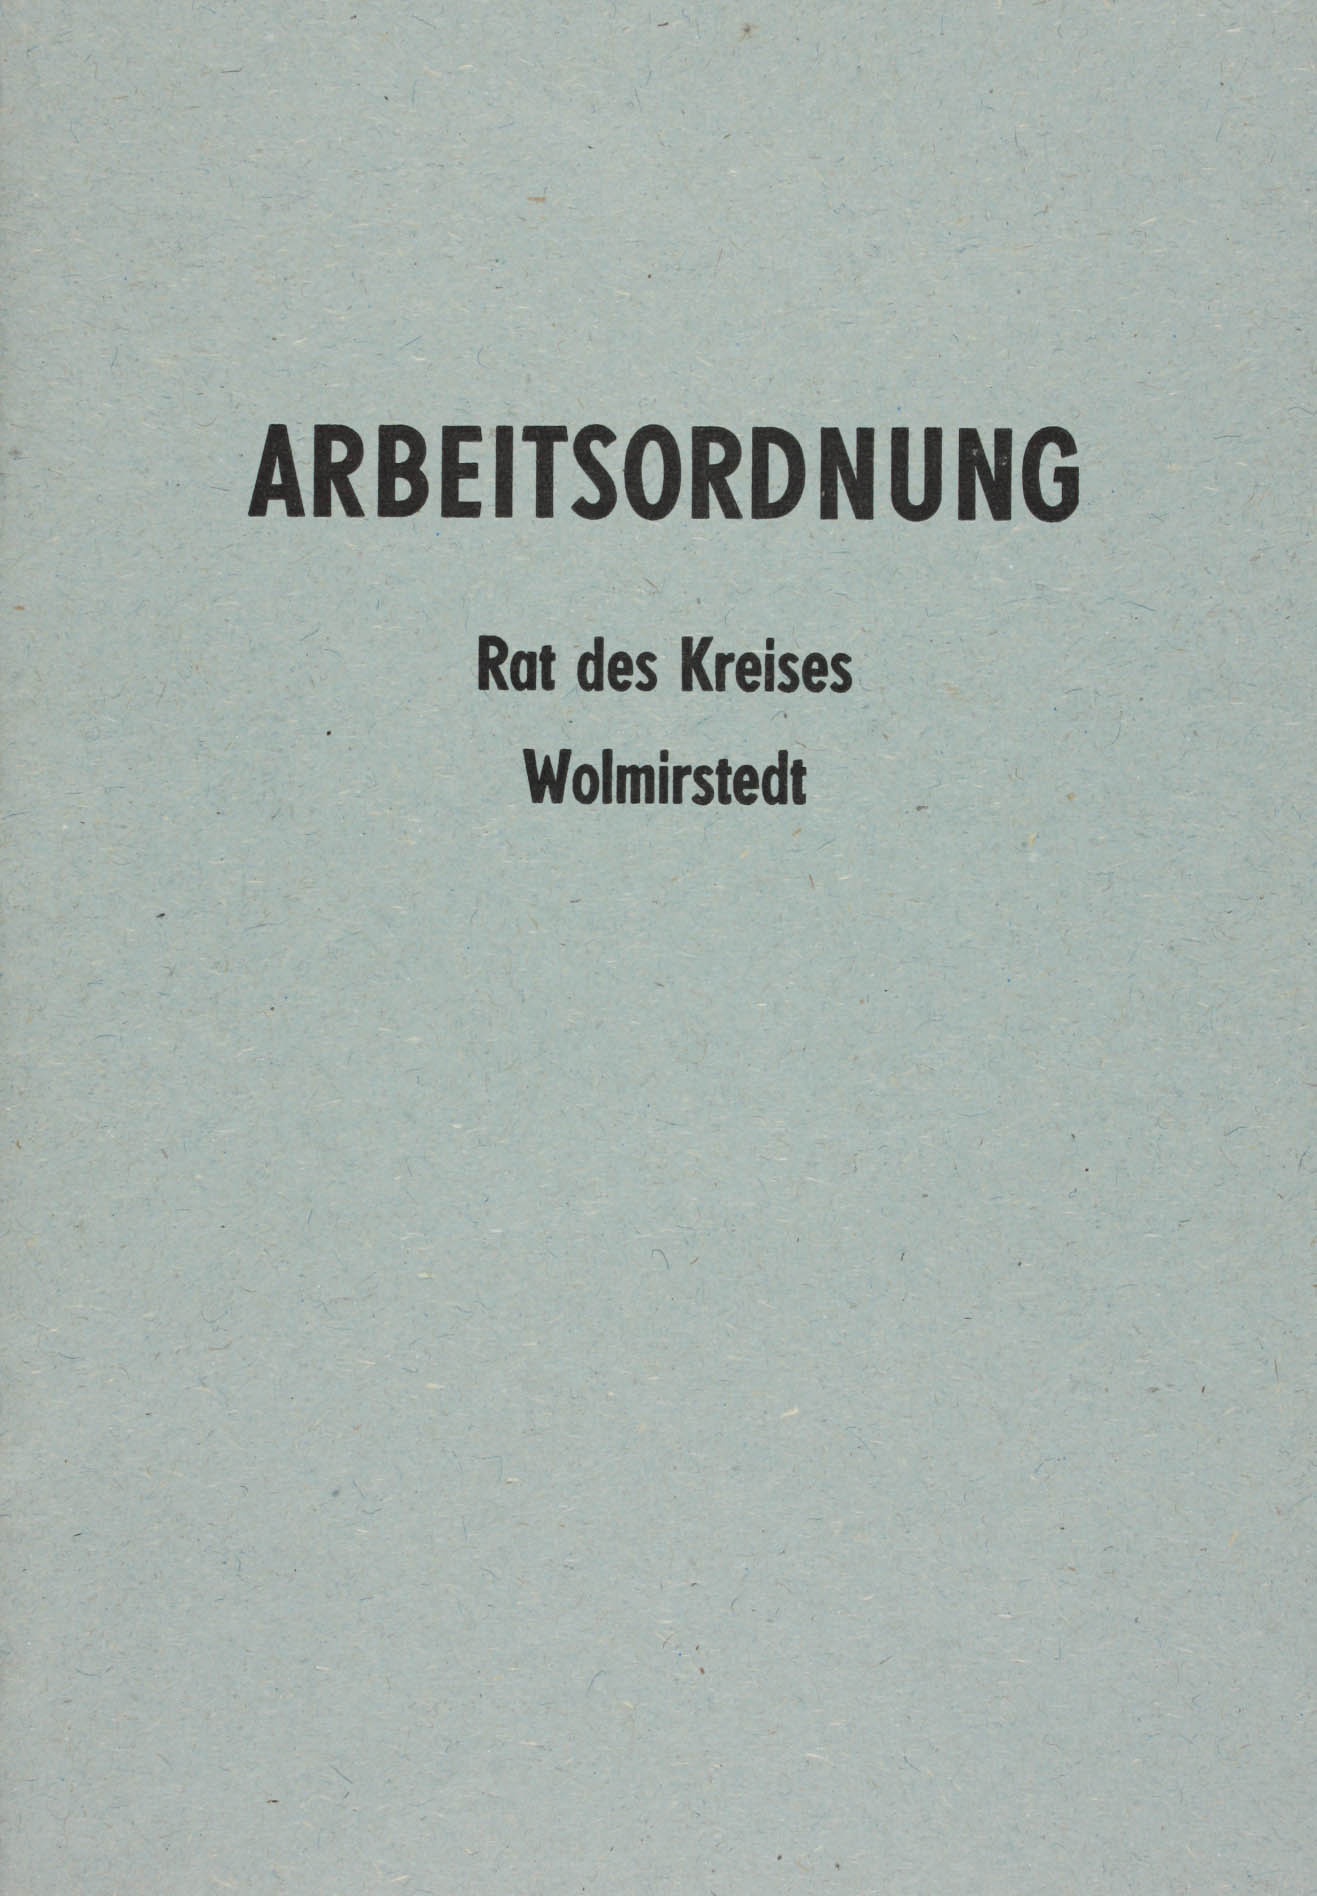 Broschüre Arbeitsordnung Rat des Kreises Wolmirstedt, 1988 (Museum Wolmirstedt RR-F)